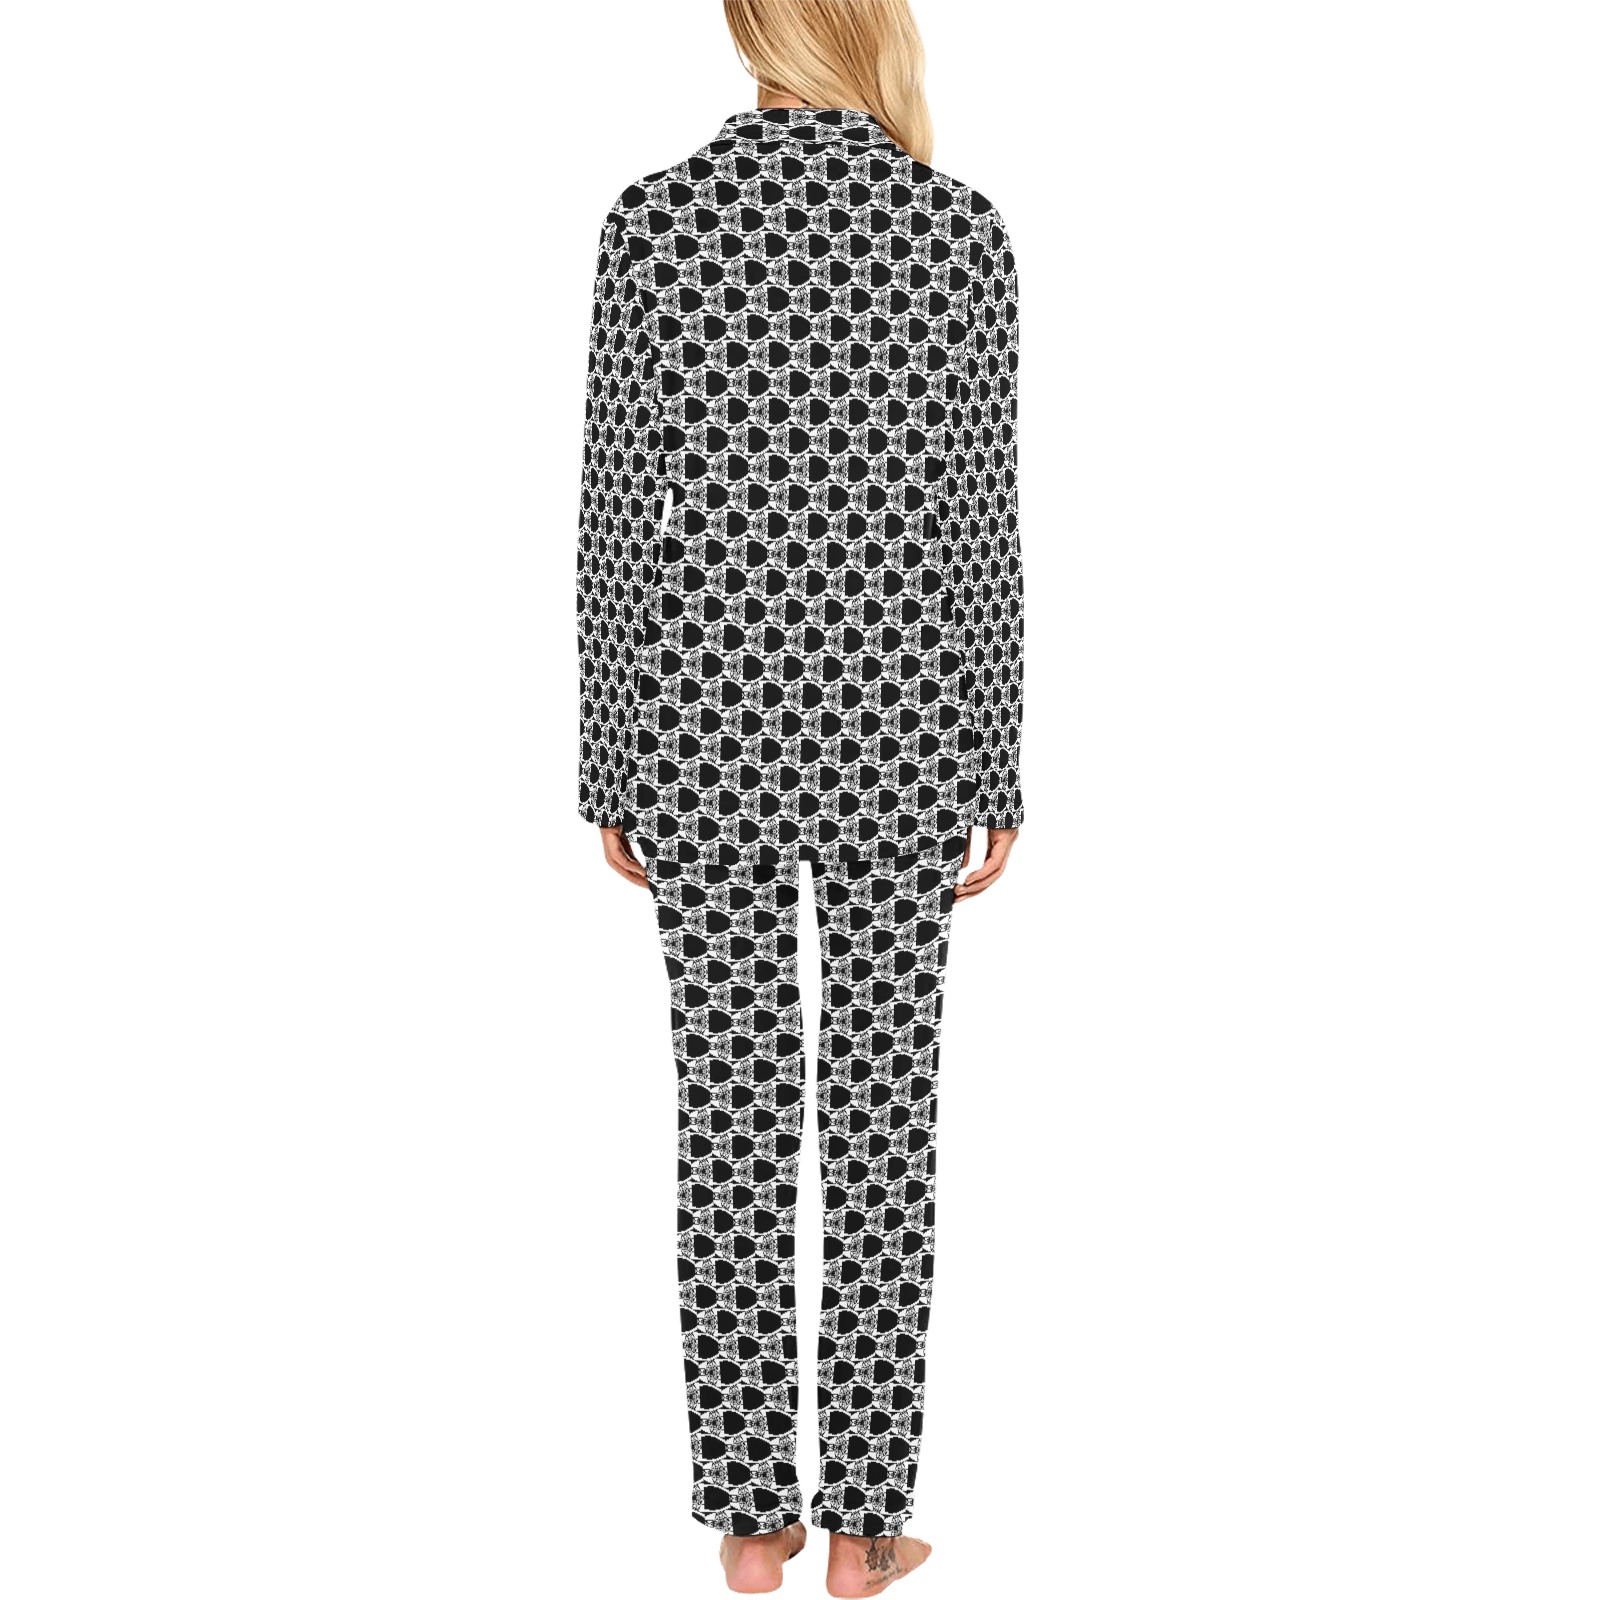 Patternator (829) Women's Long Pajama Set